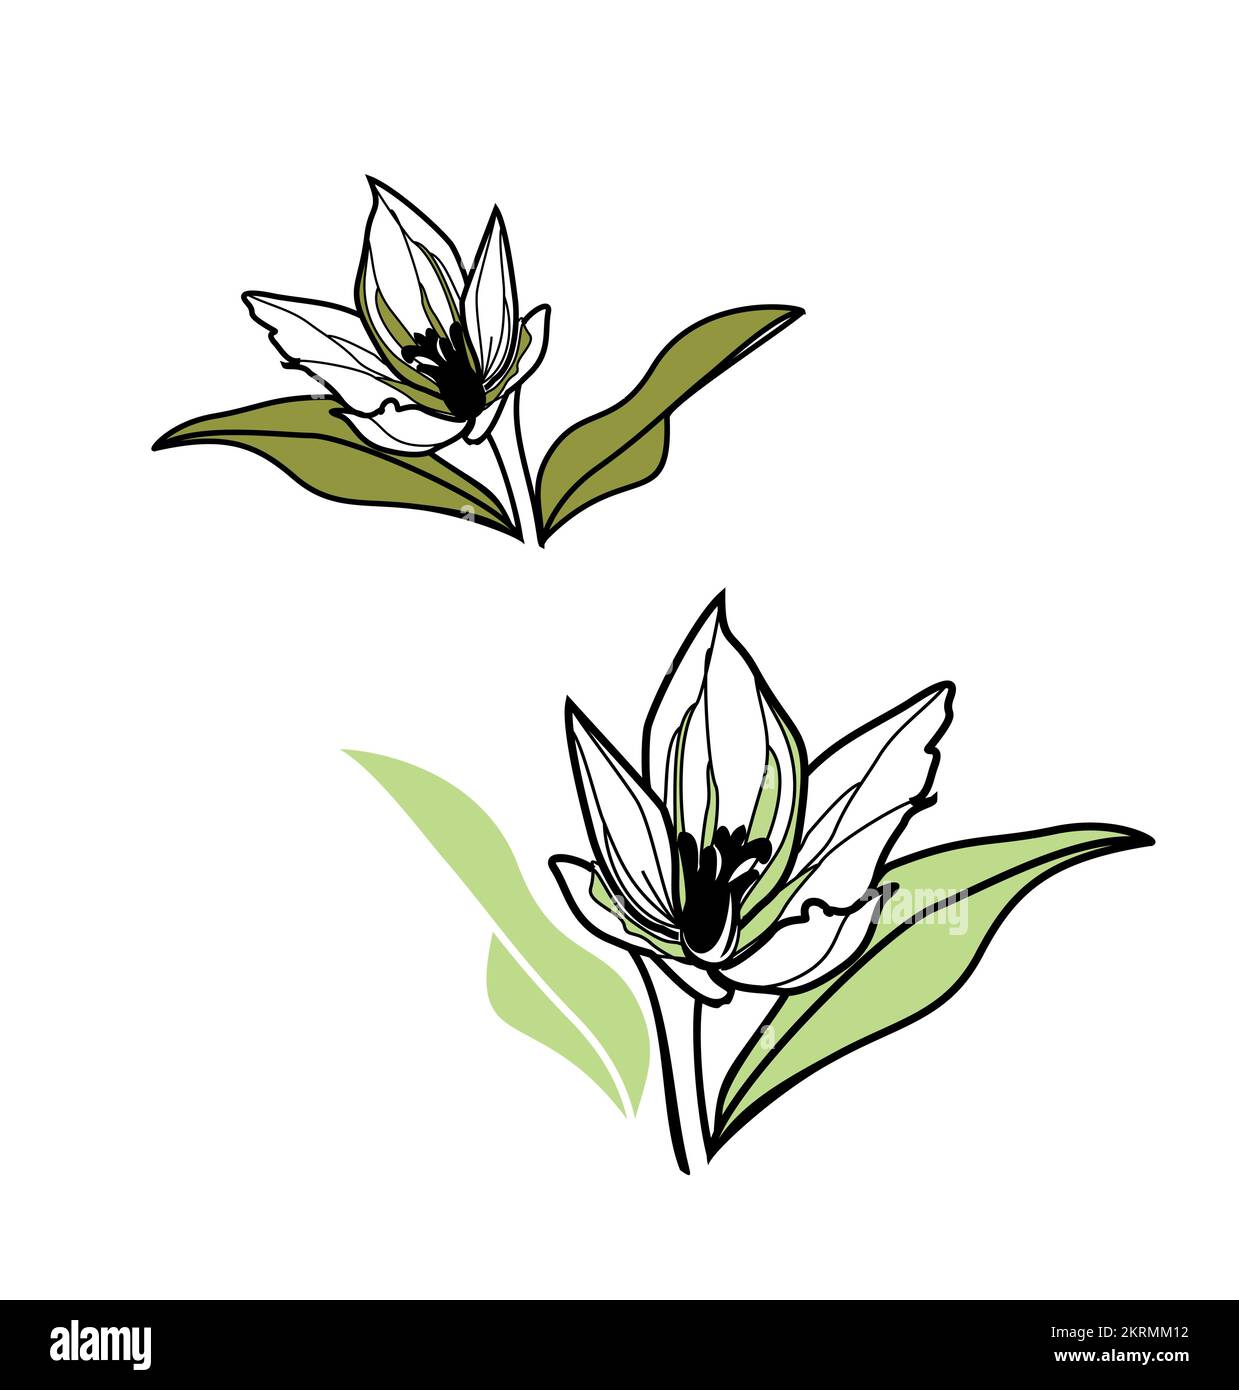 Wunderschöne Blume, Blumen, Blumenmotiv, Illustration botanischer Blumen, handgezeichnete, von der Natur inspirierte Logotype-Vorlage Stock Vektor